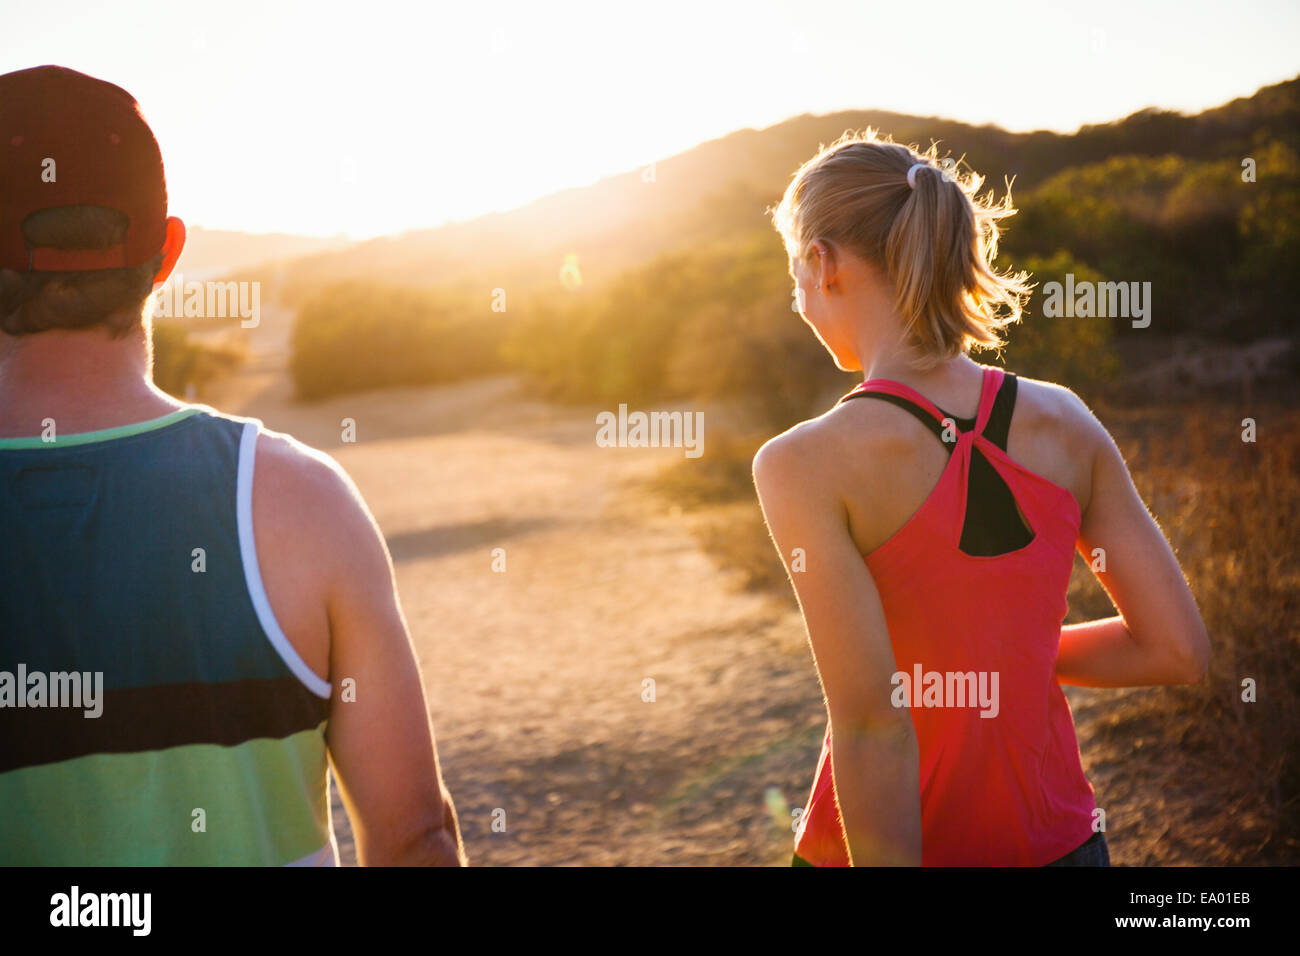 Per gli amanti del jogging camminando sul percorso soleggiato, Portland, CA, Stati Uniti d'America Foto Stock